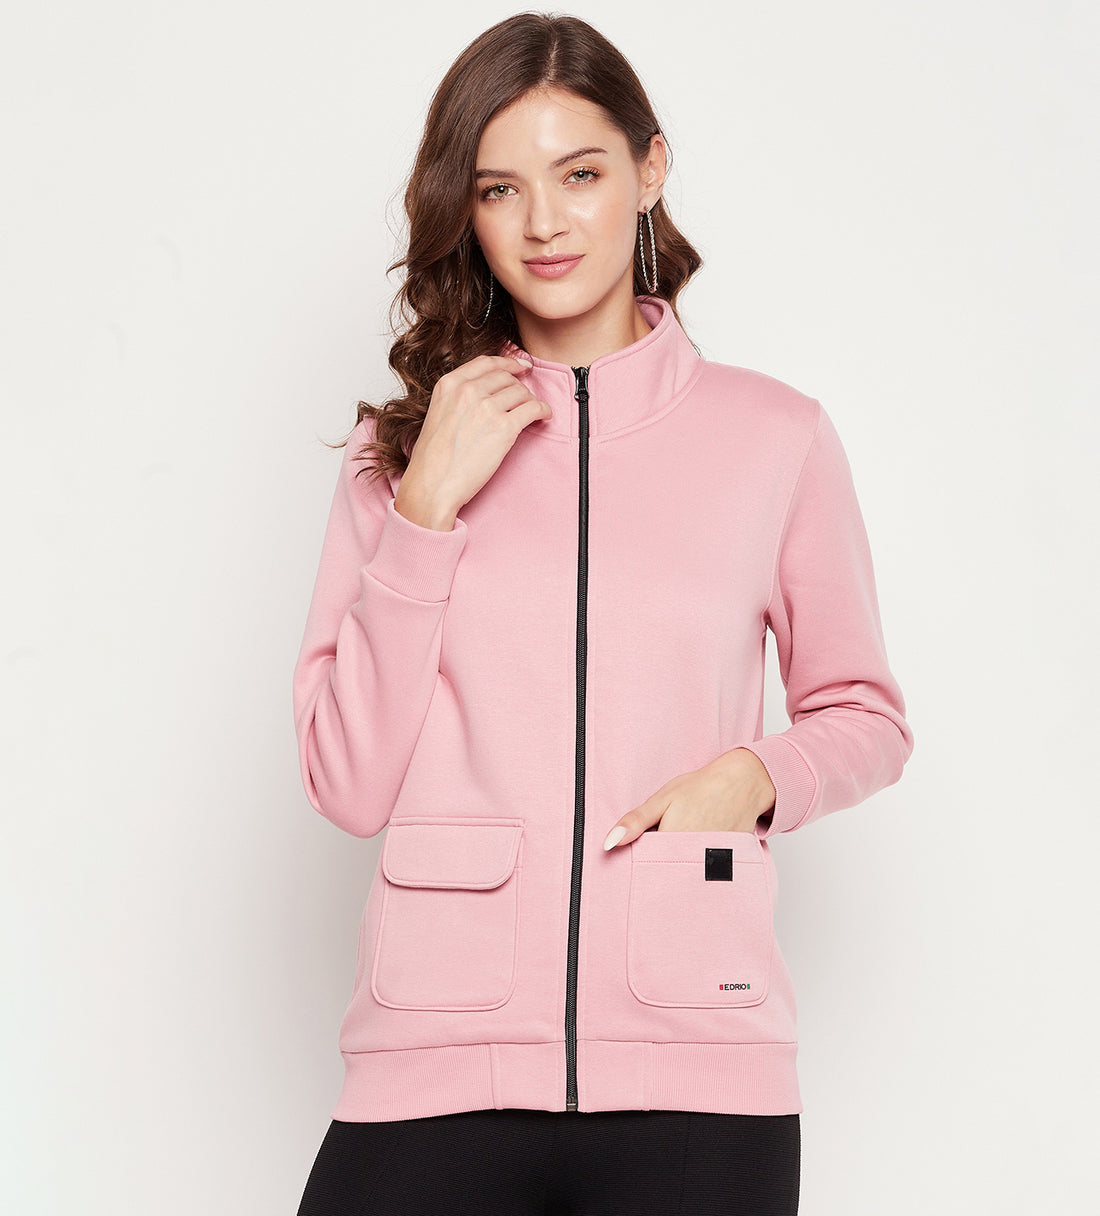 Women Pink Regular Fleece Sweatshirt With Flap Pocket